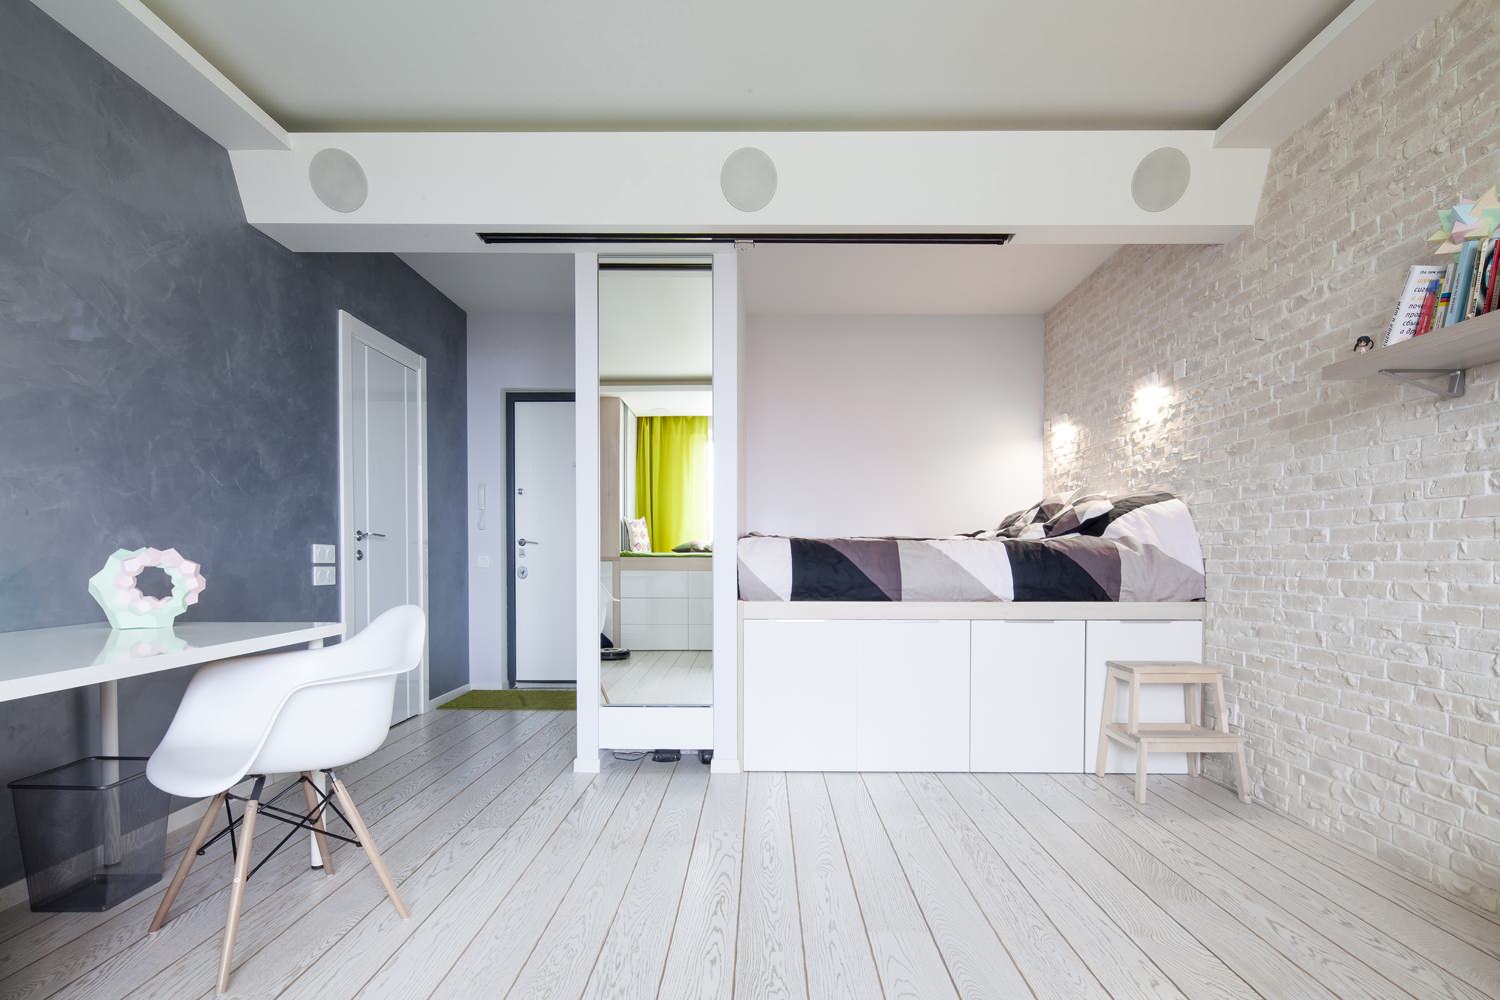 Как расставить мебель в маленькой комнате (спальне)? Фото и рекомендации специалистов Mr.Doors